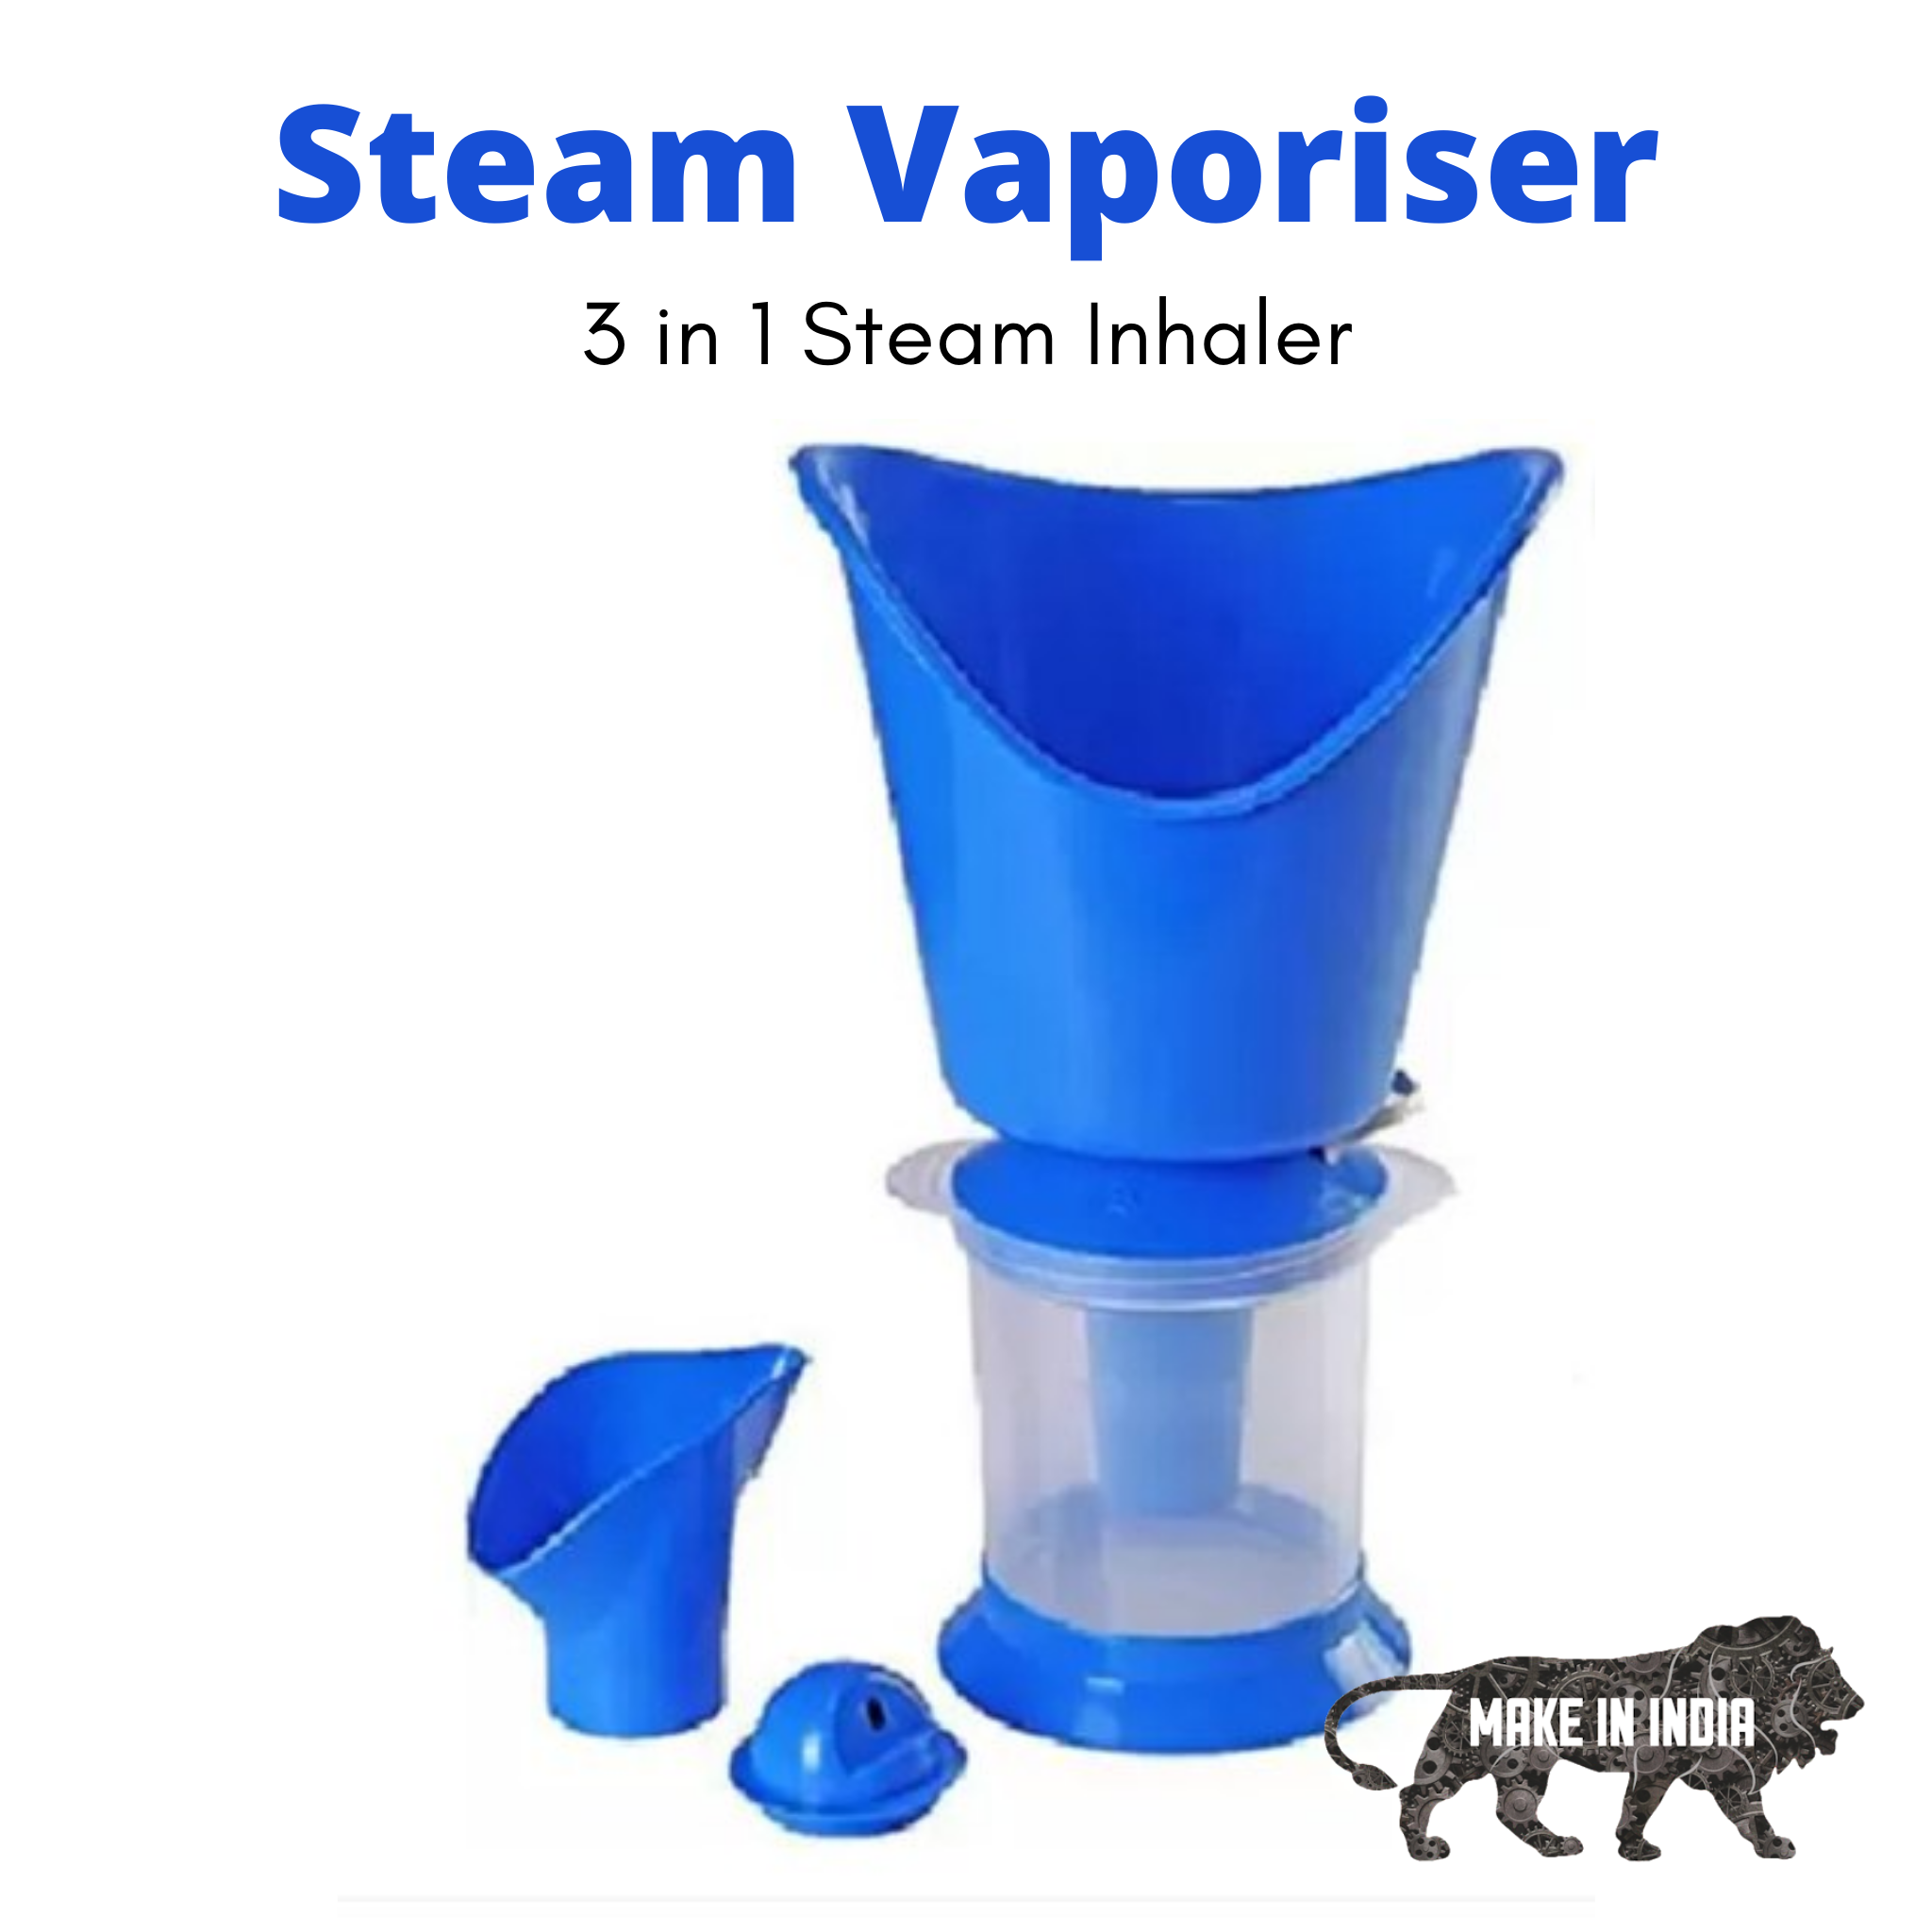 Steam Vaporiser - 3 in 1 Steam Inhaler